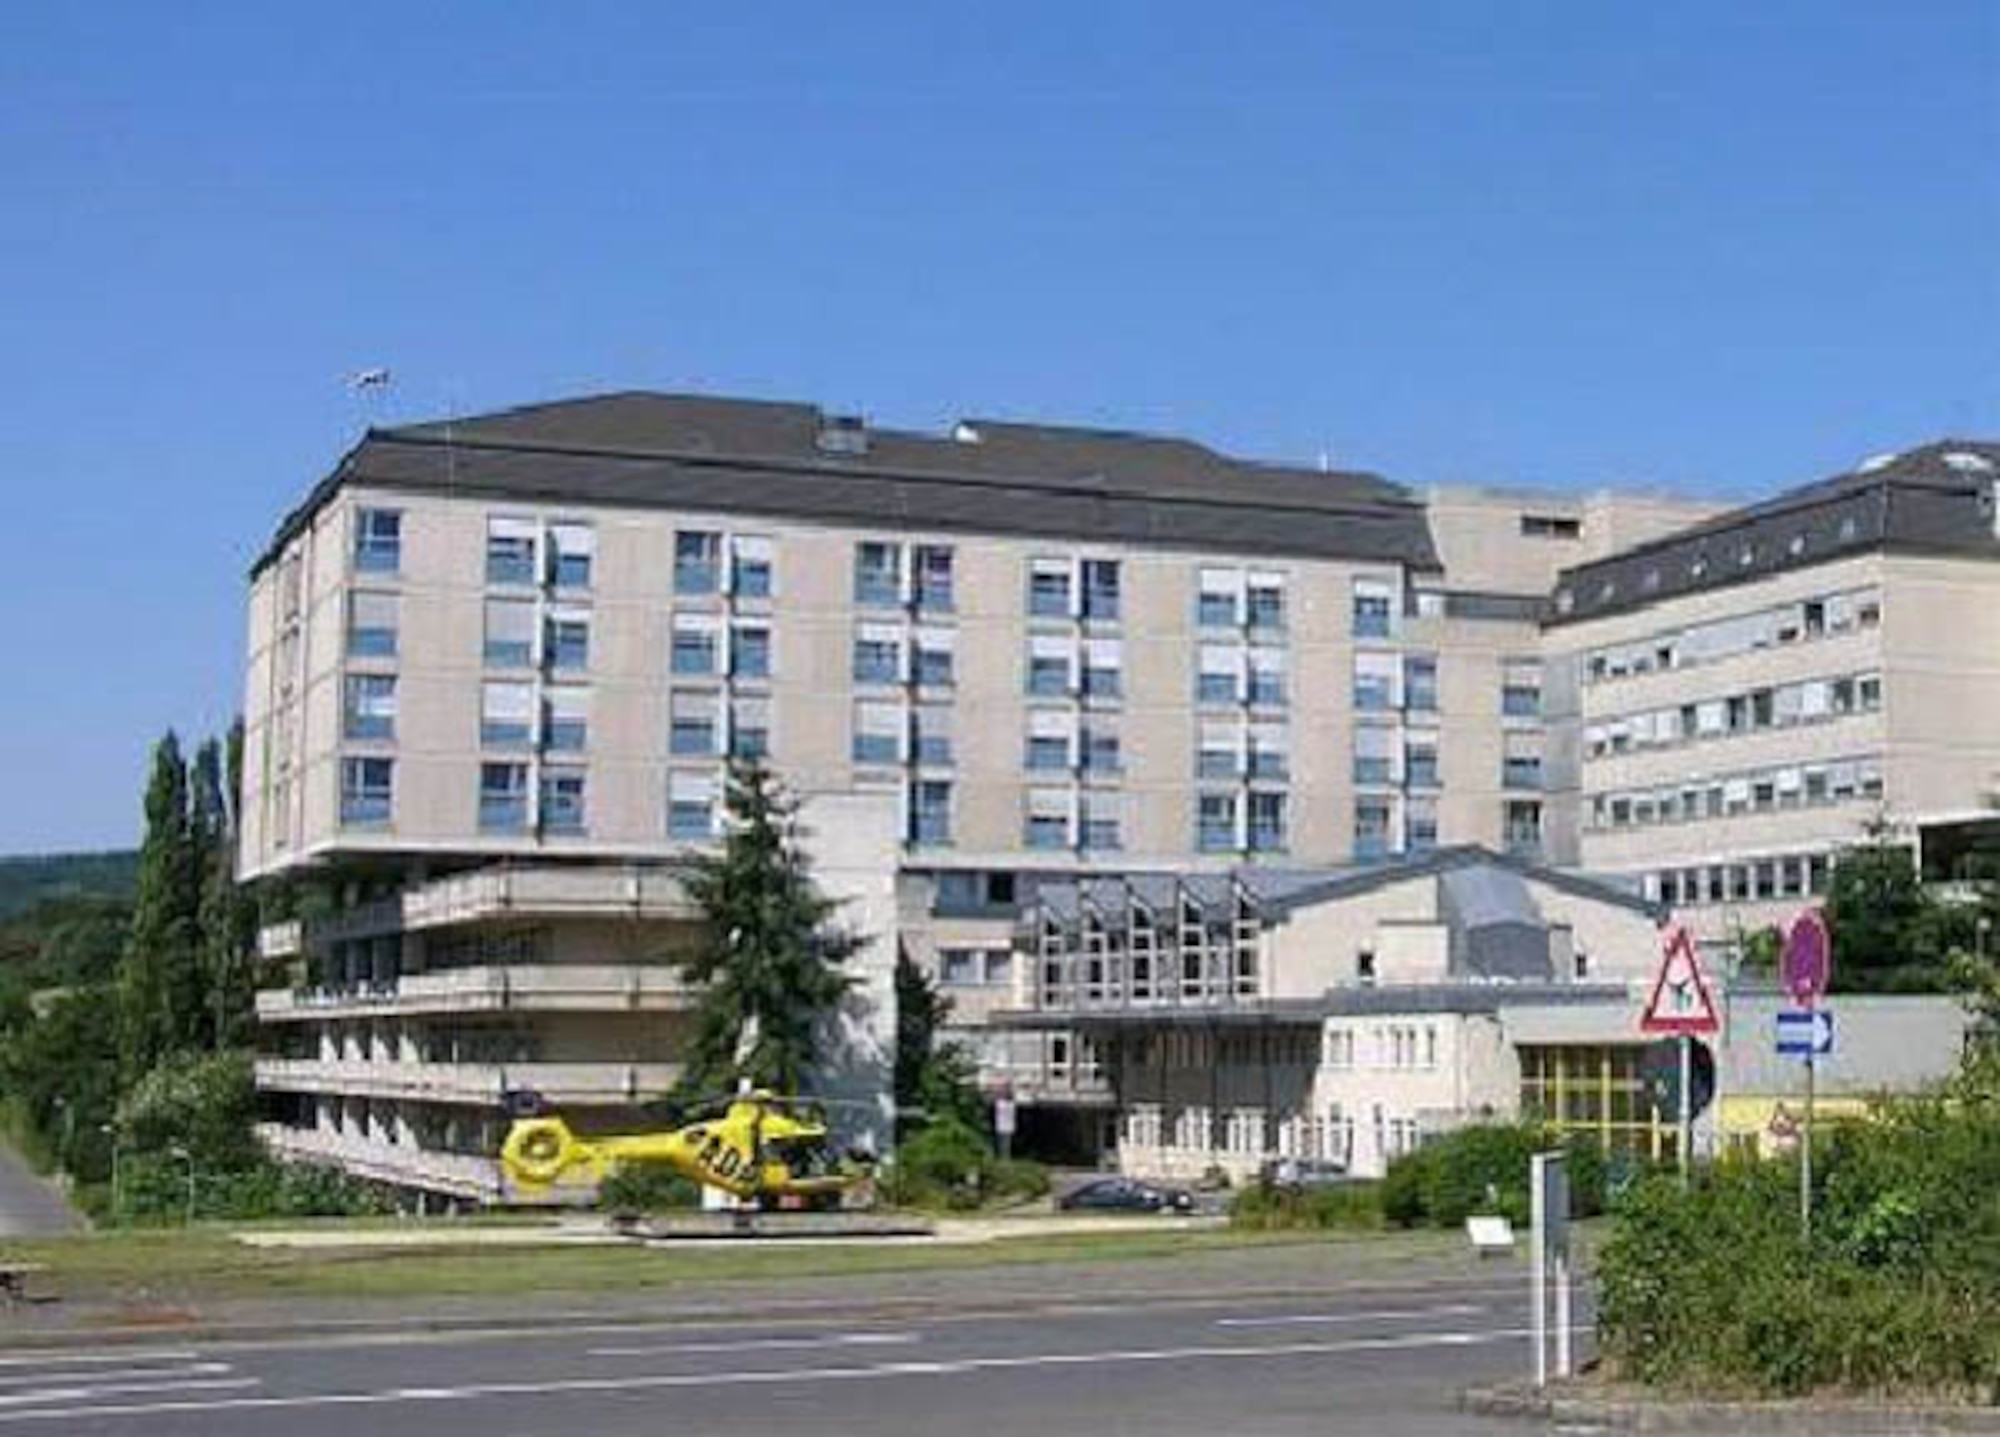 The St. Elisabeth Krankenhaus is located at Koblenzer strasse 91, Wittlich, Germany. 